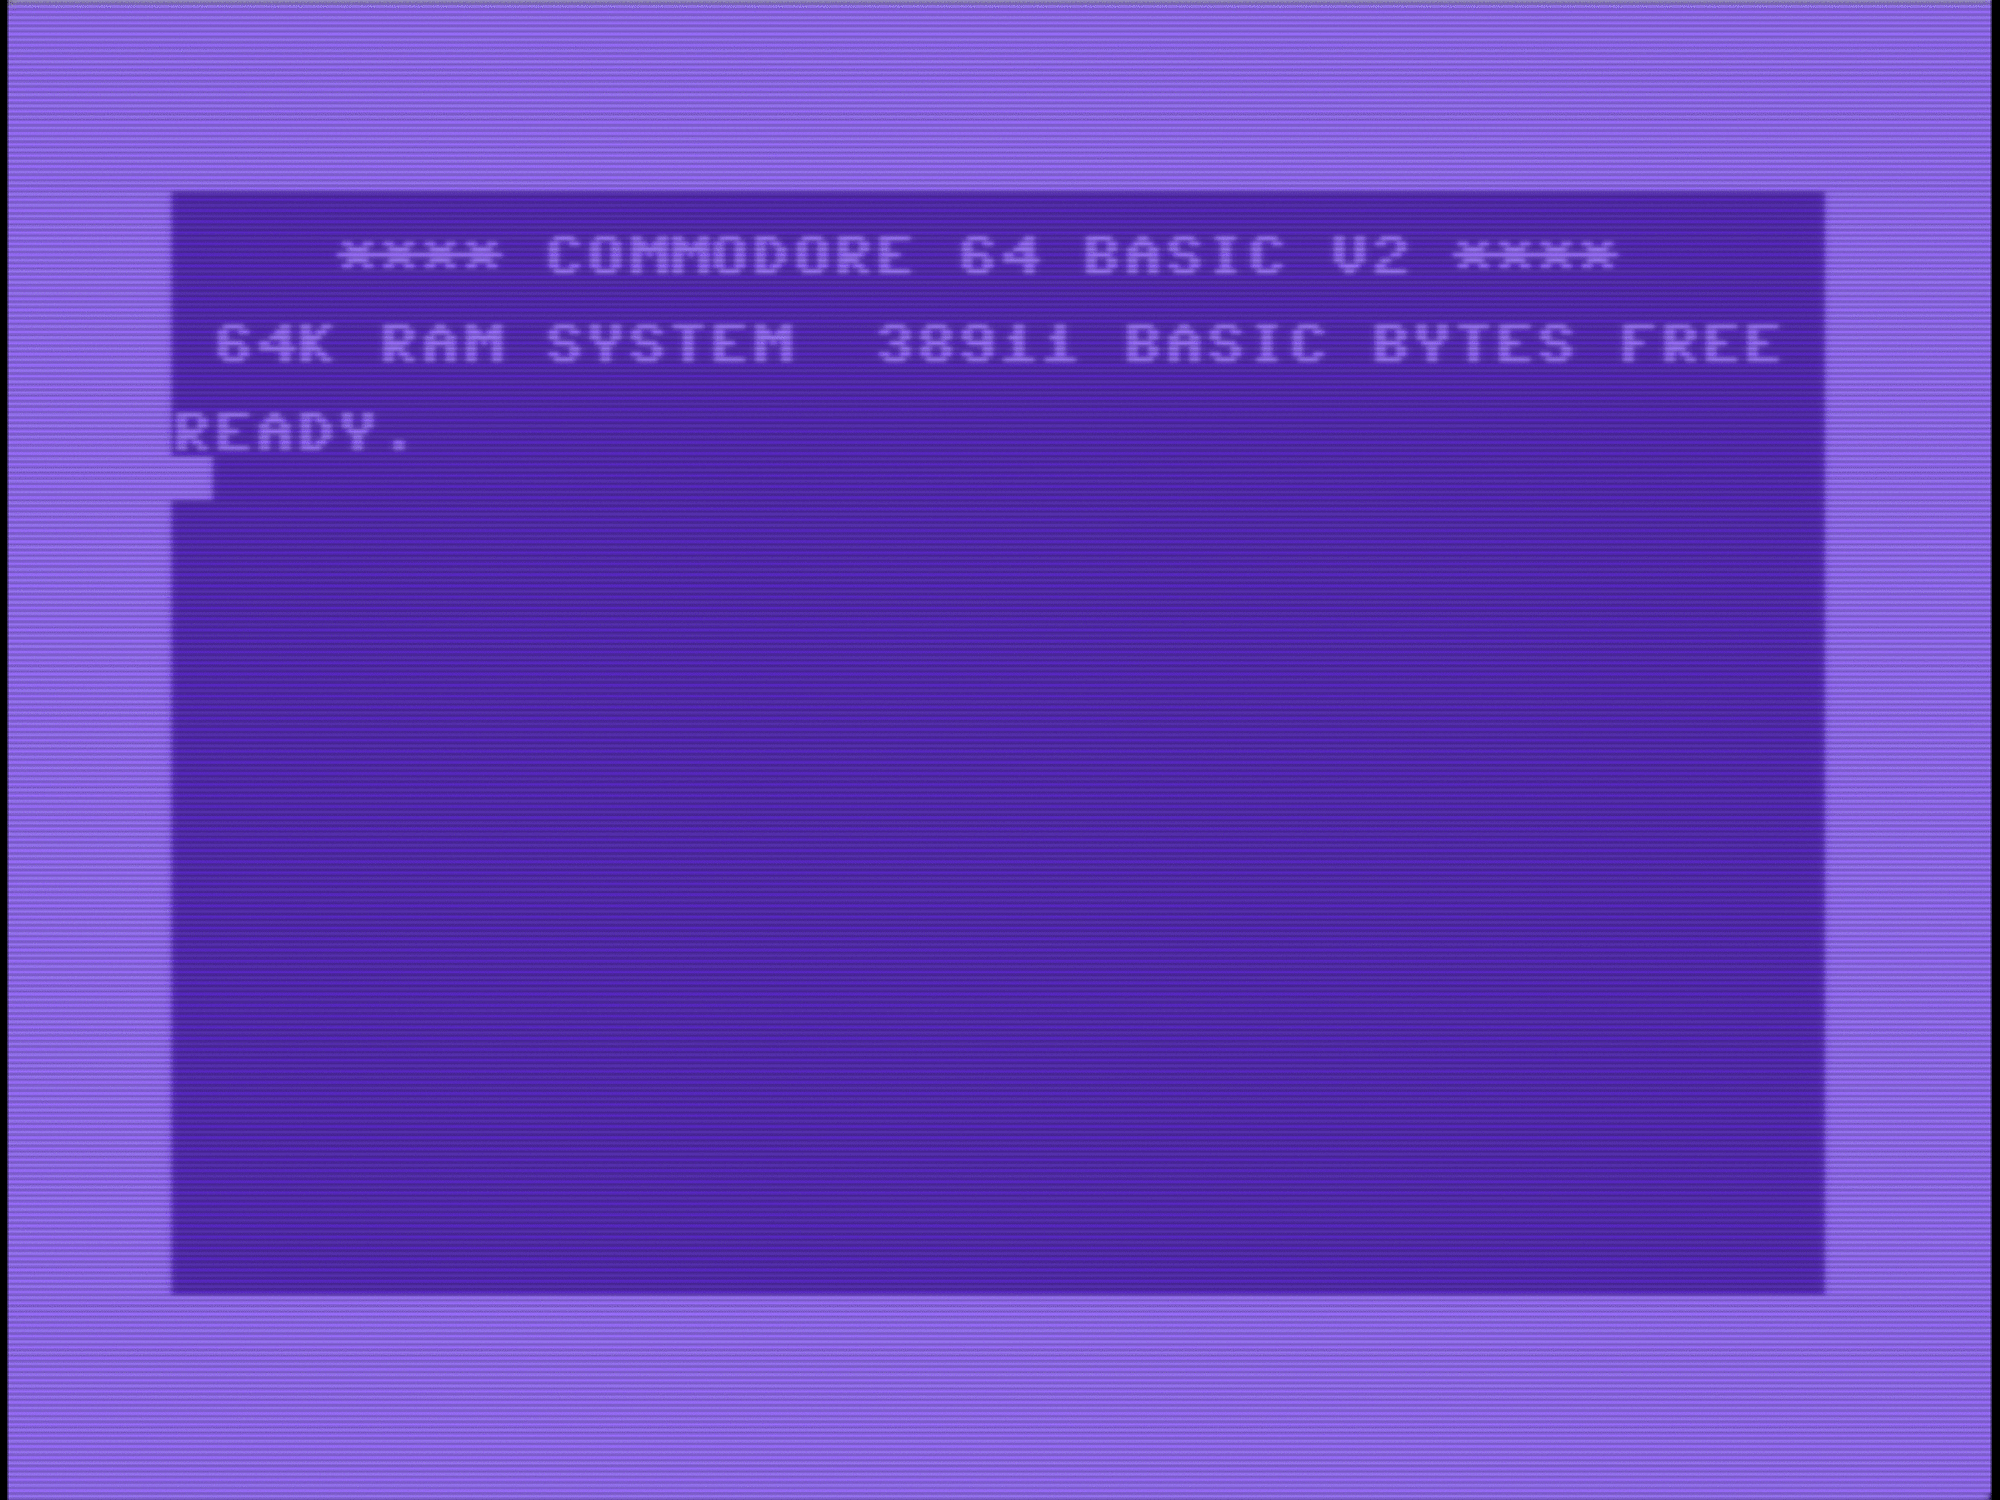 Commodore-64.gif